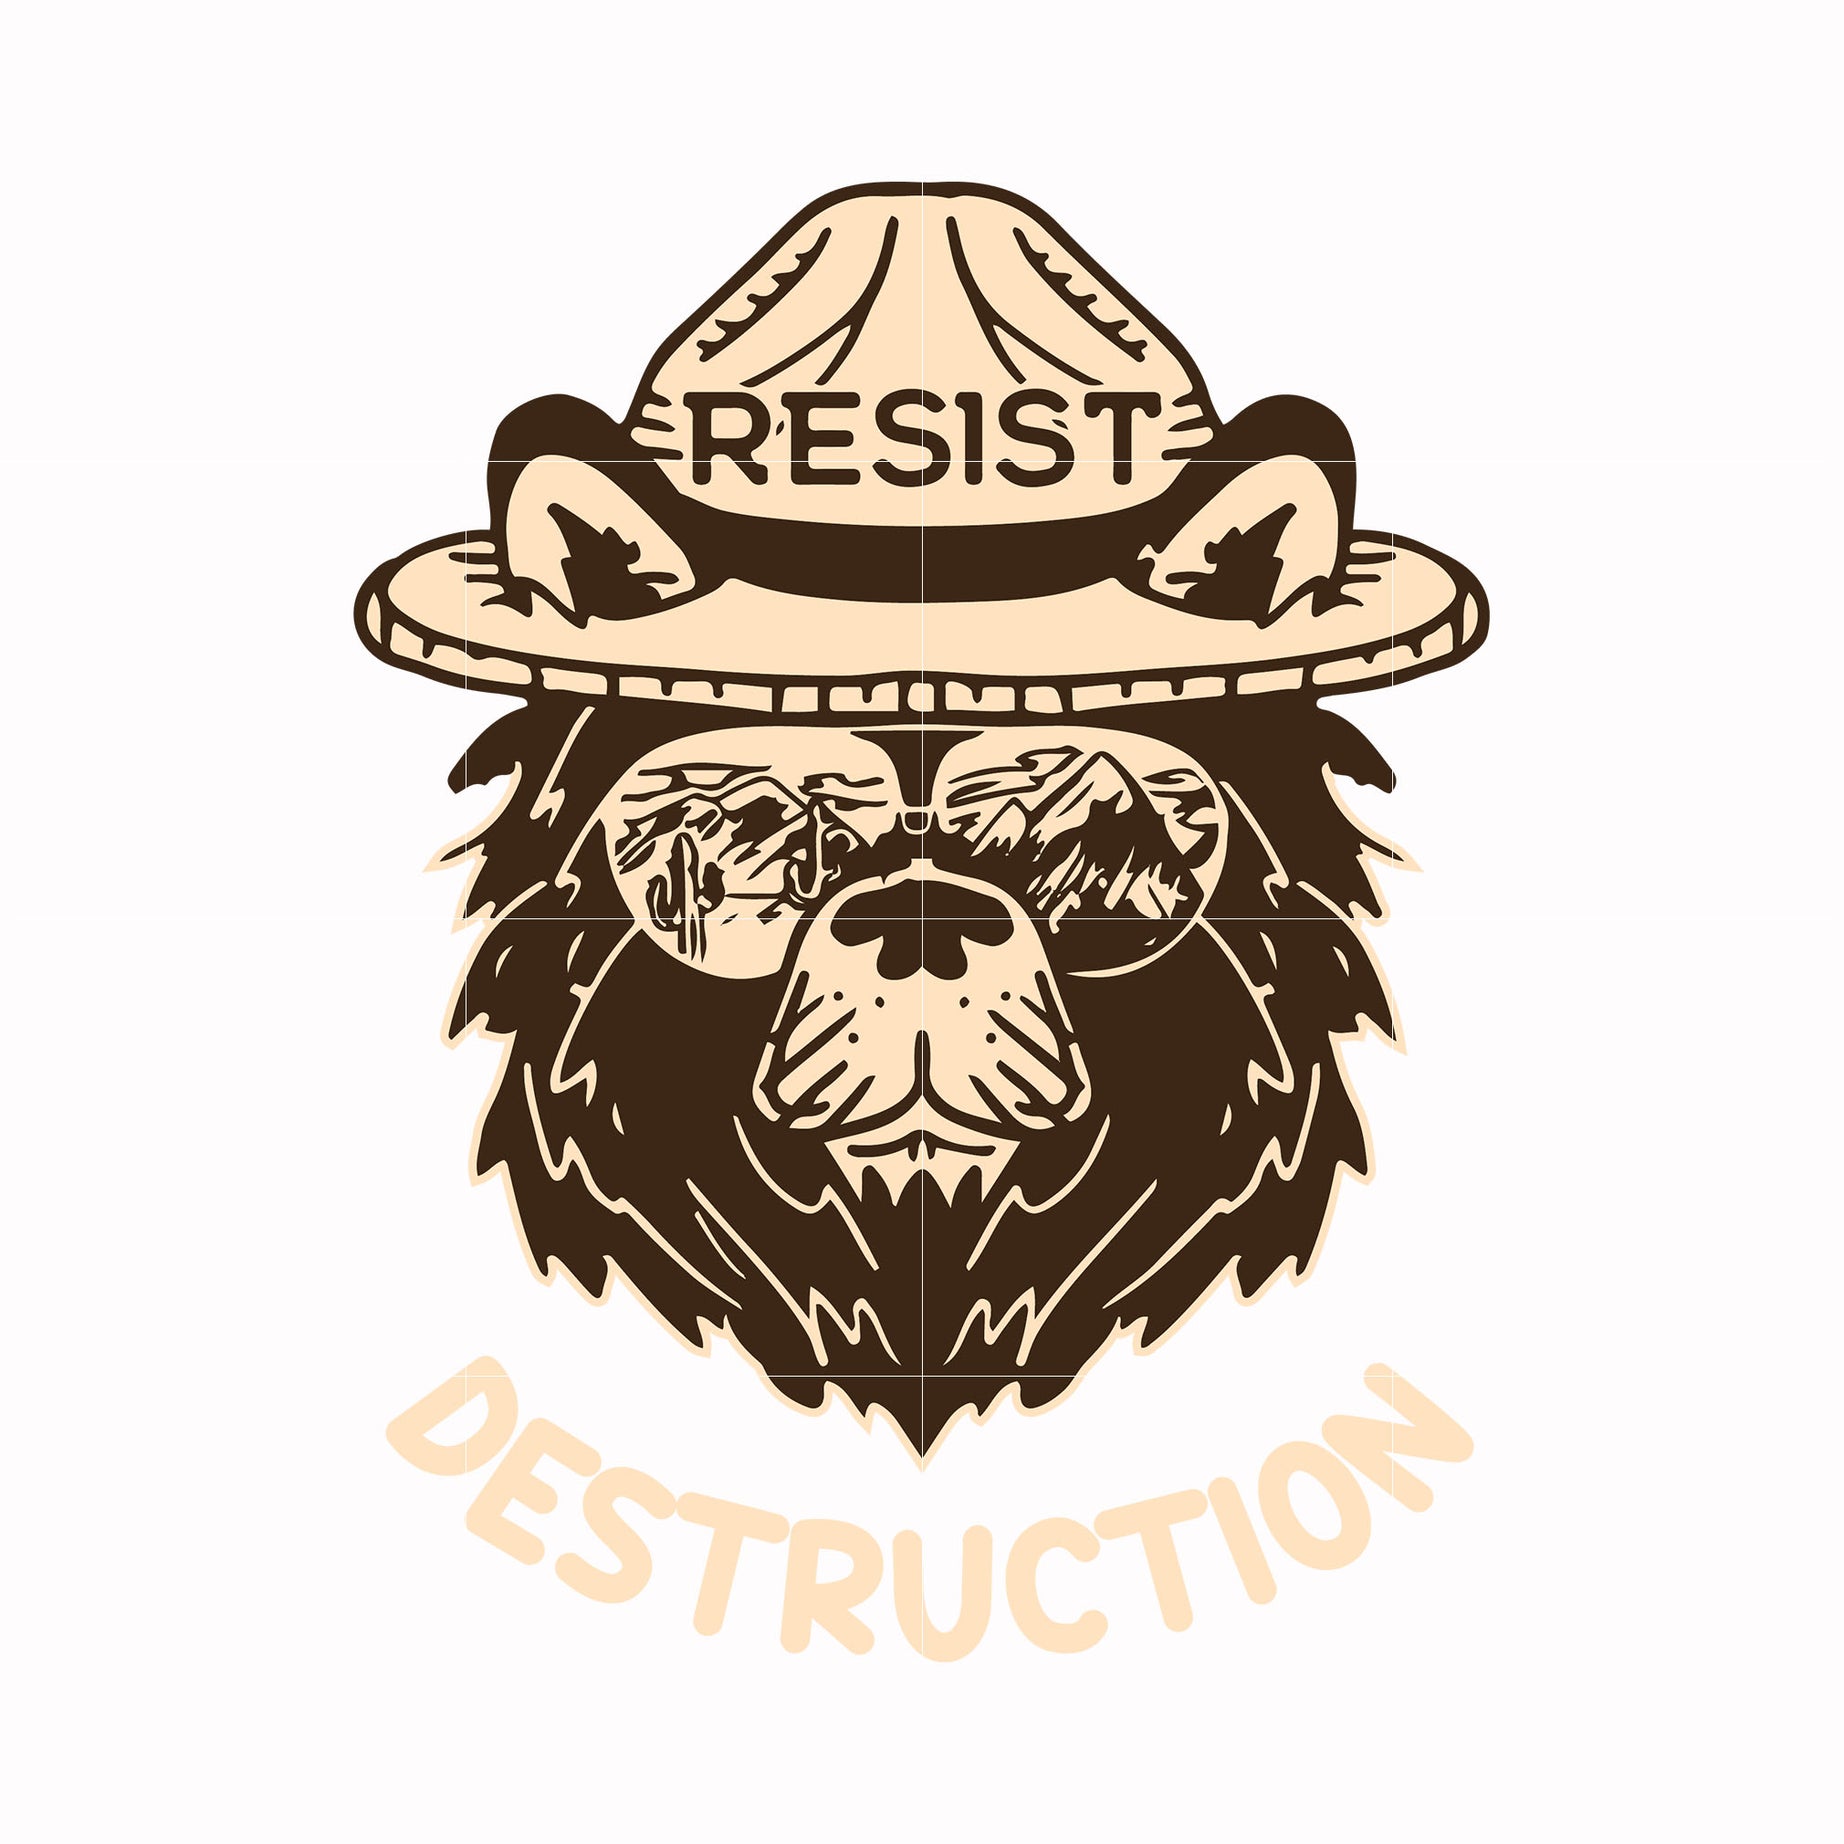 Resist destruction svg, png, dxf, eps digital file OTH0030